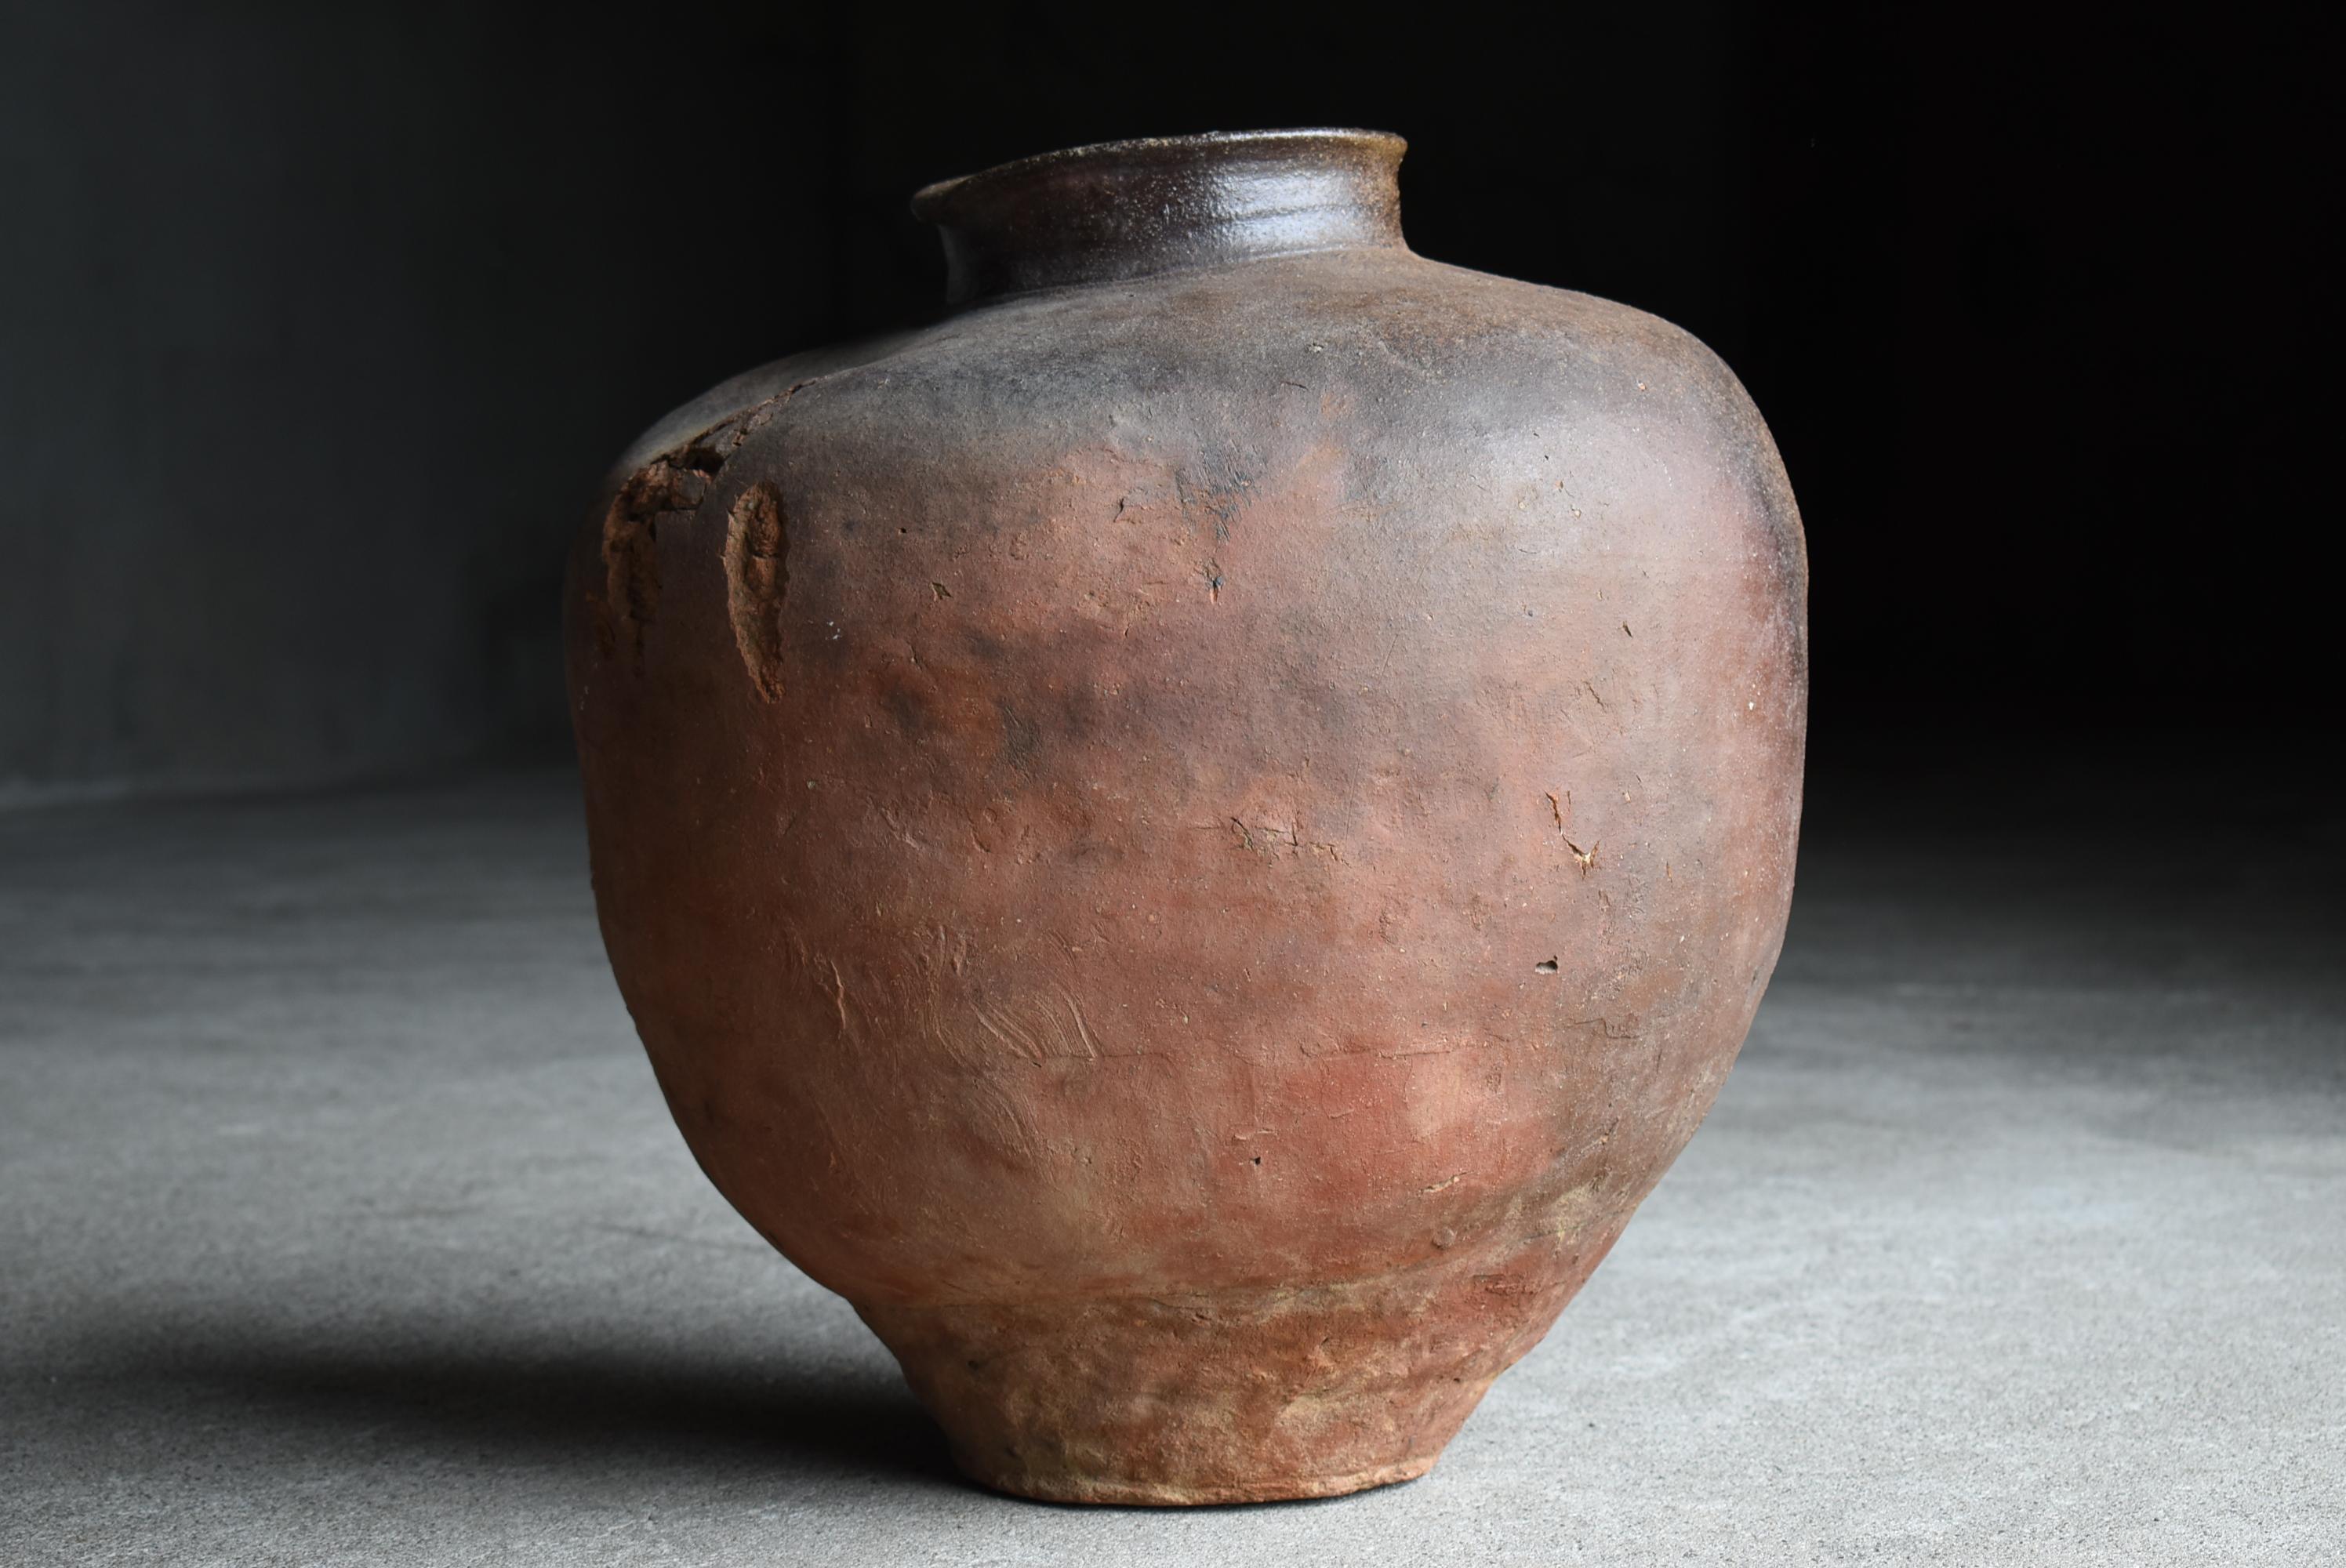 Japanese Antique Pottery 1700s-1800s/Tsubo Flower Vase Vessel Wabisabi Jar 3